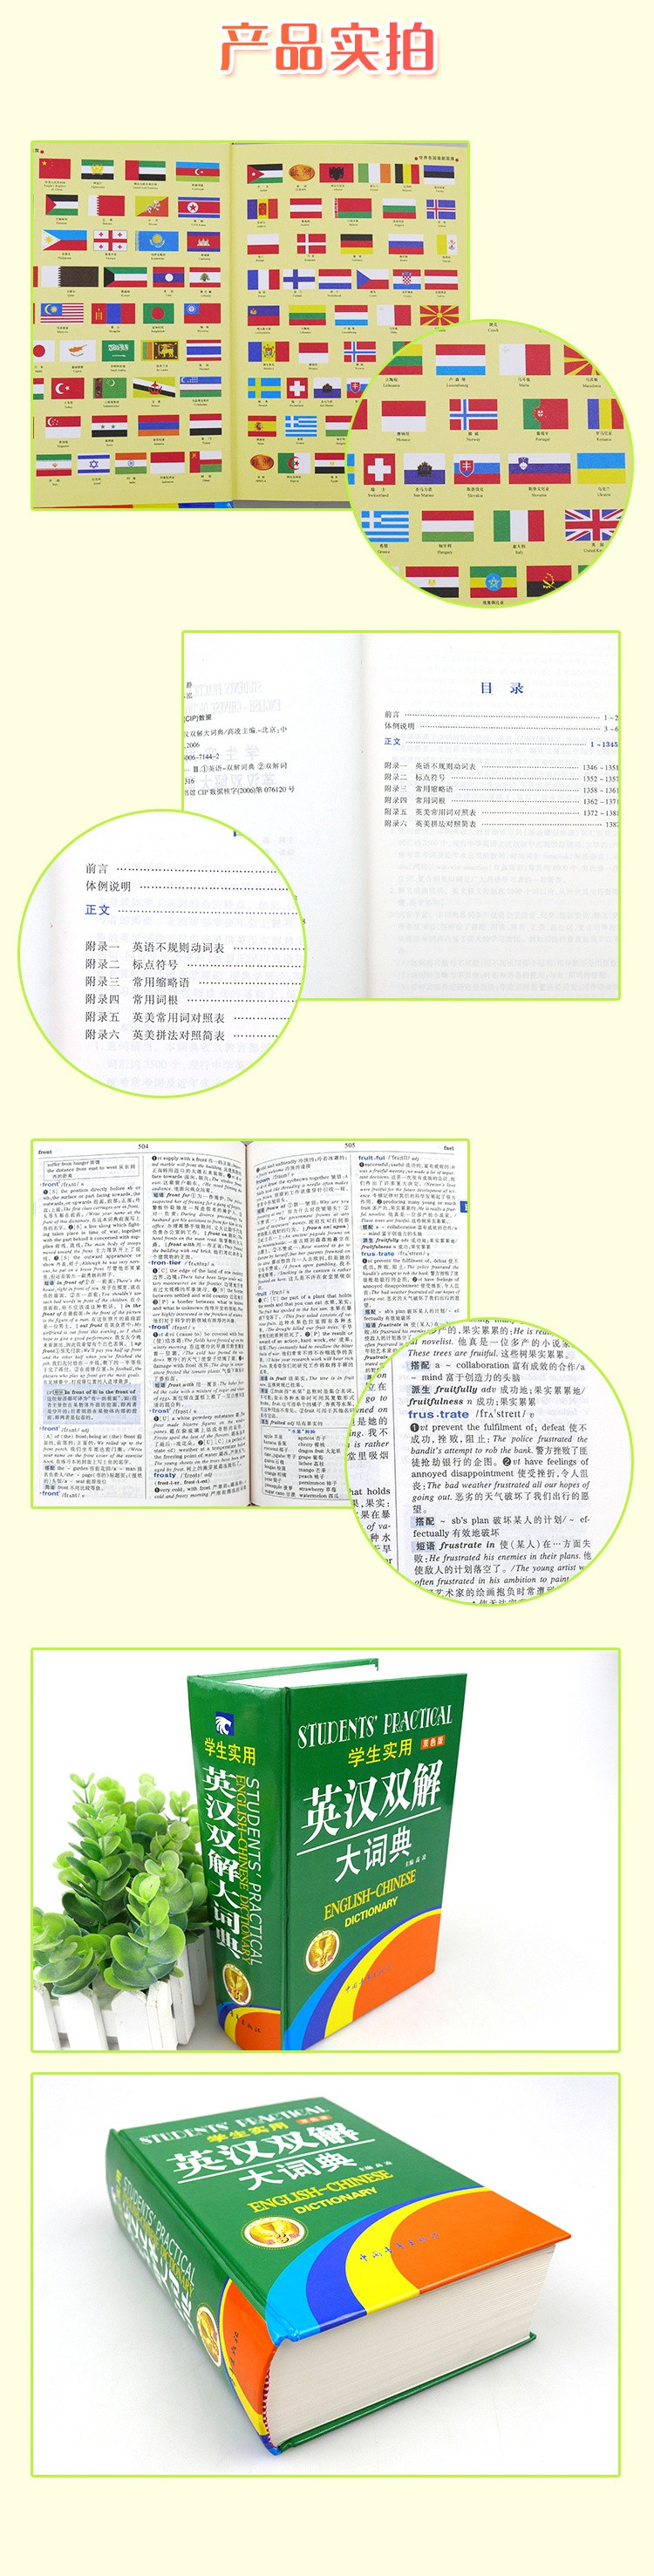 英汉双解大词典 第3版	ISBN 978-7-5006-7144-2